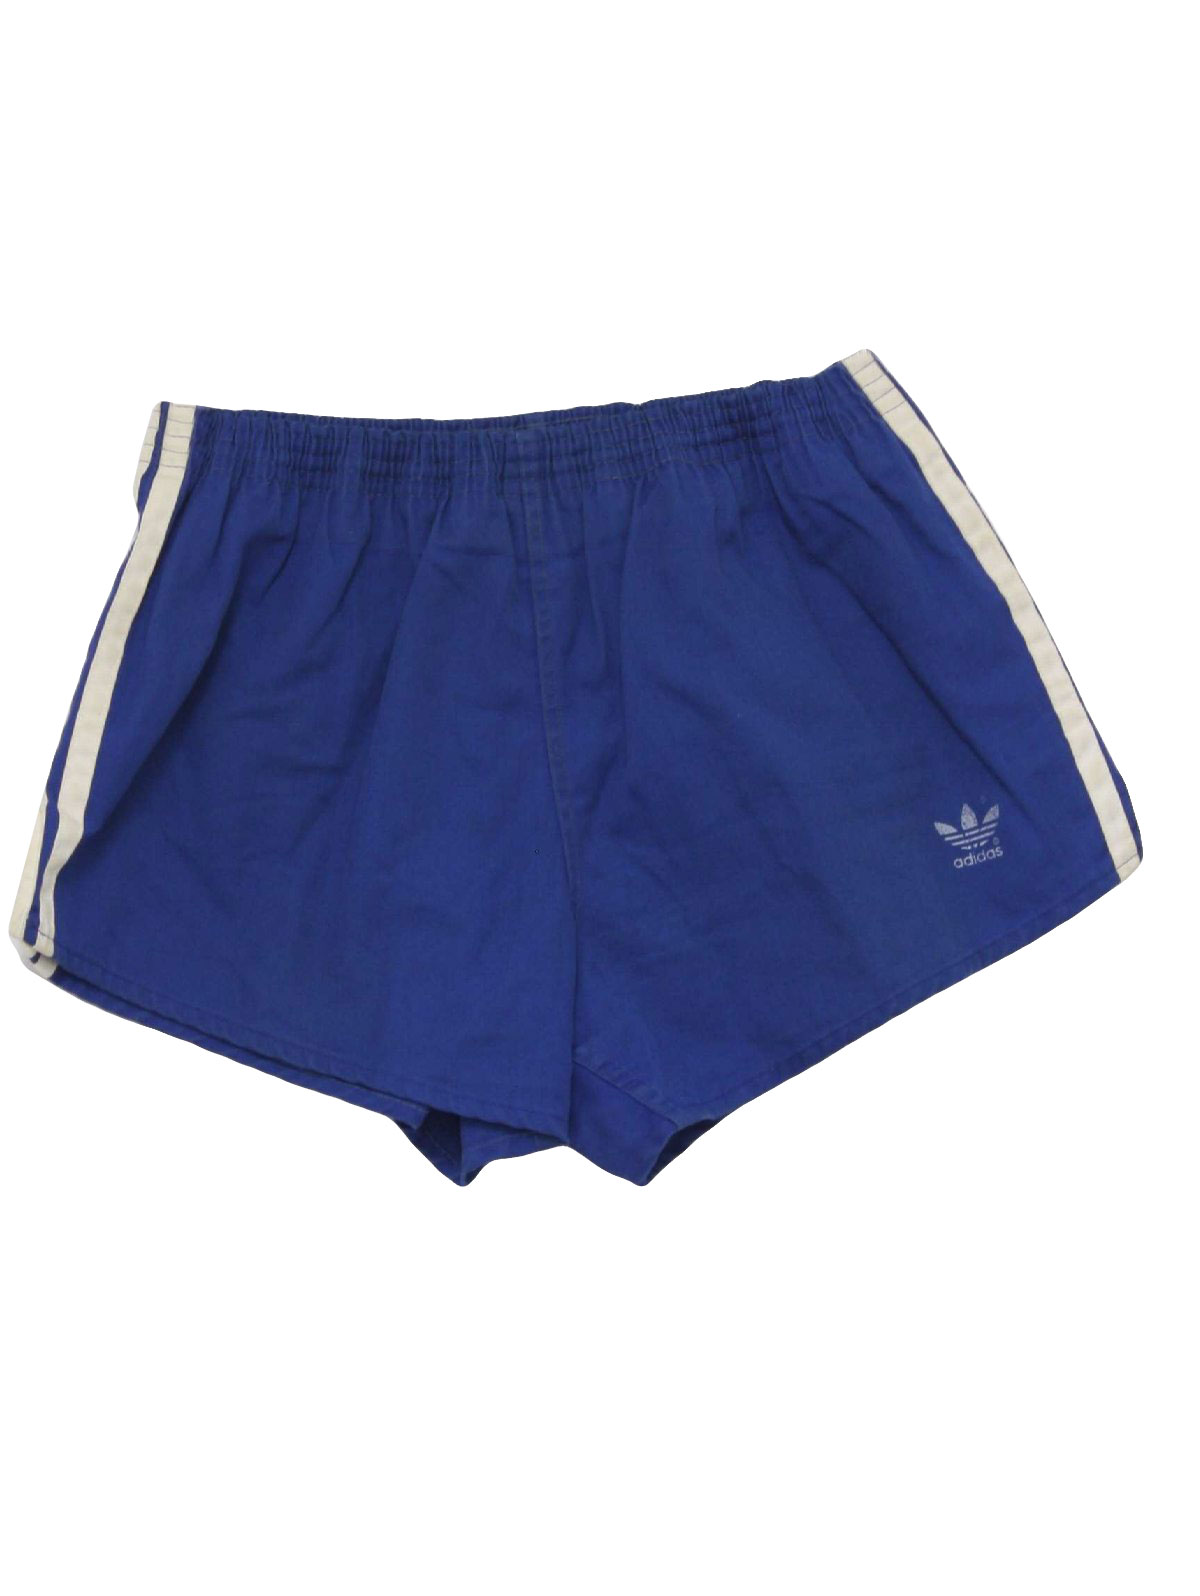 Vintage 80s Swimsuit/Swimwear: 80s -Adidas- Mens cobalt blue cotton ...